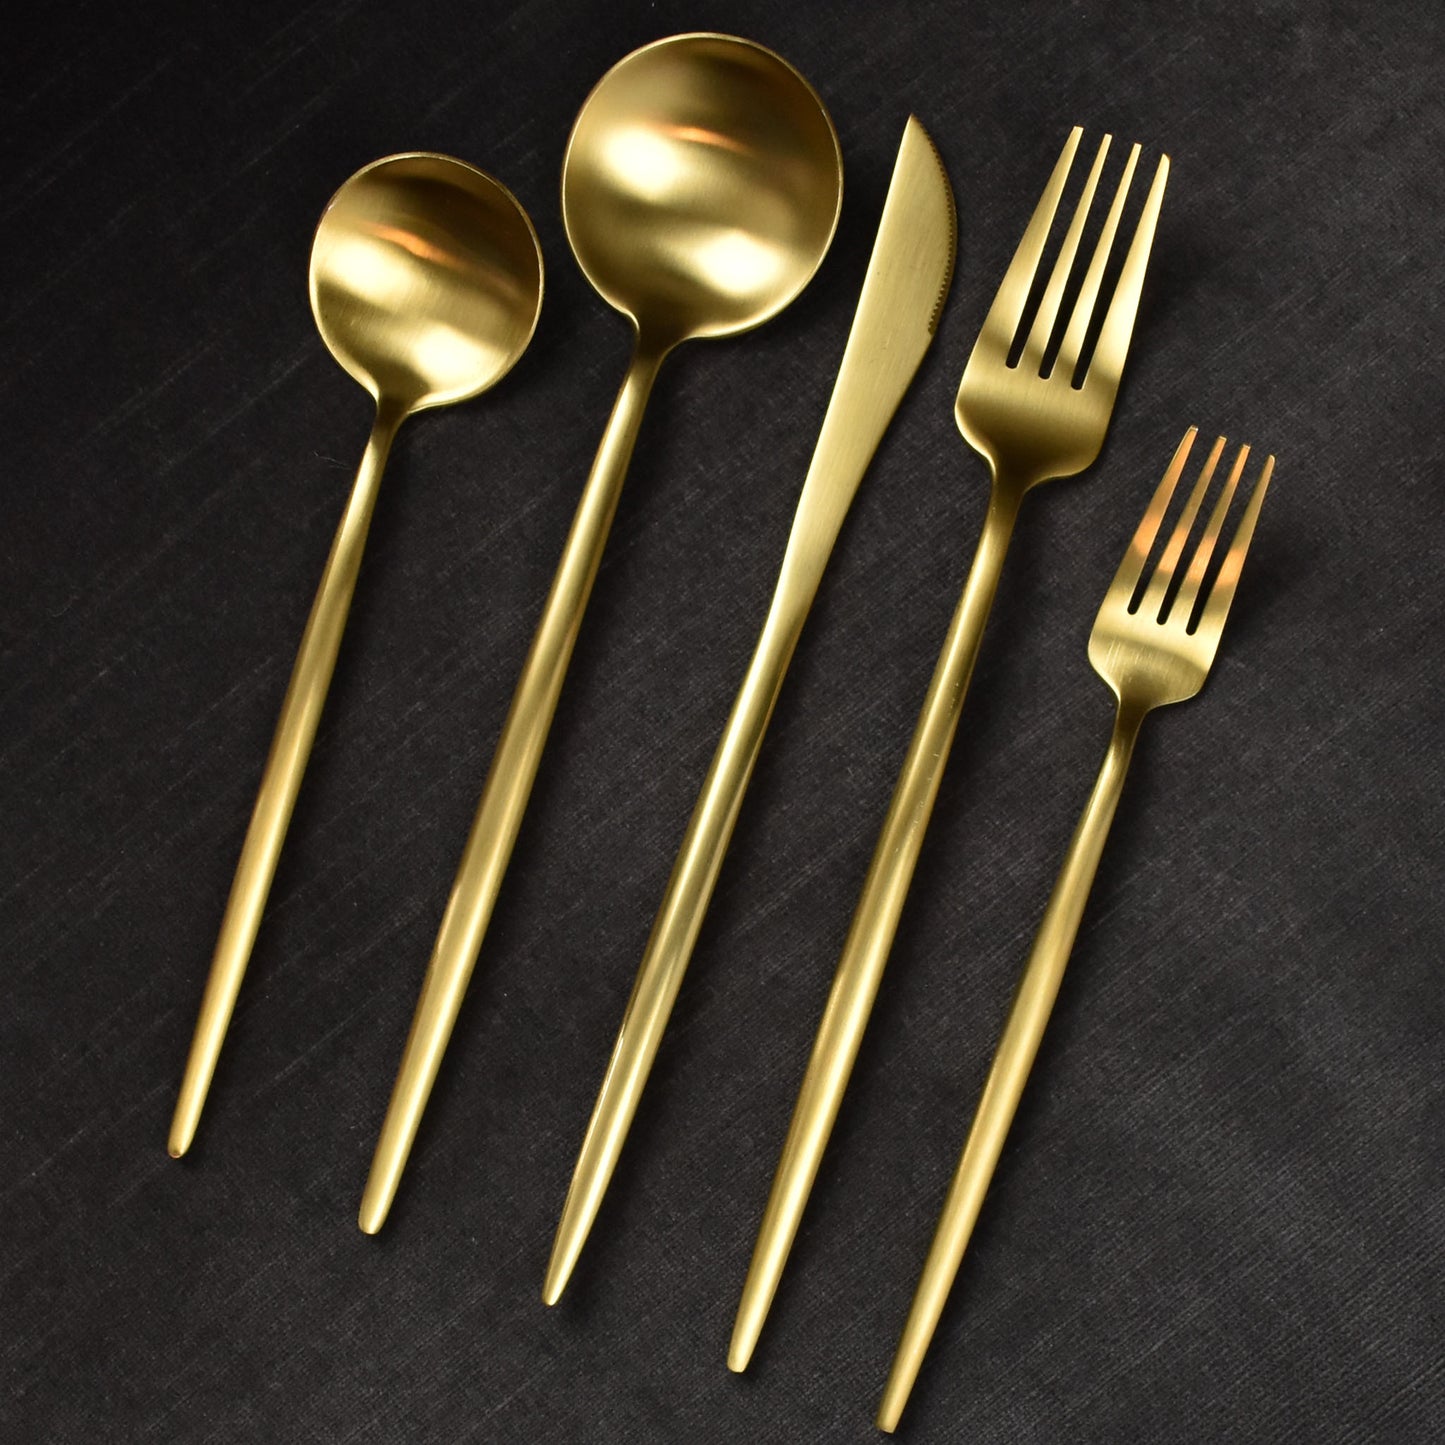 flatware set in brushed gold & black